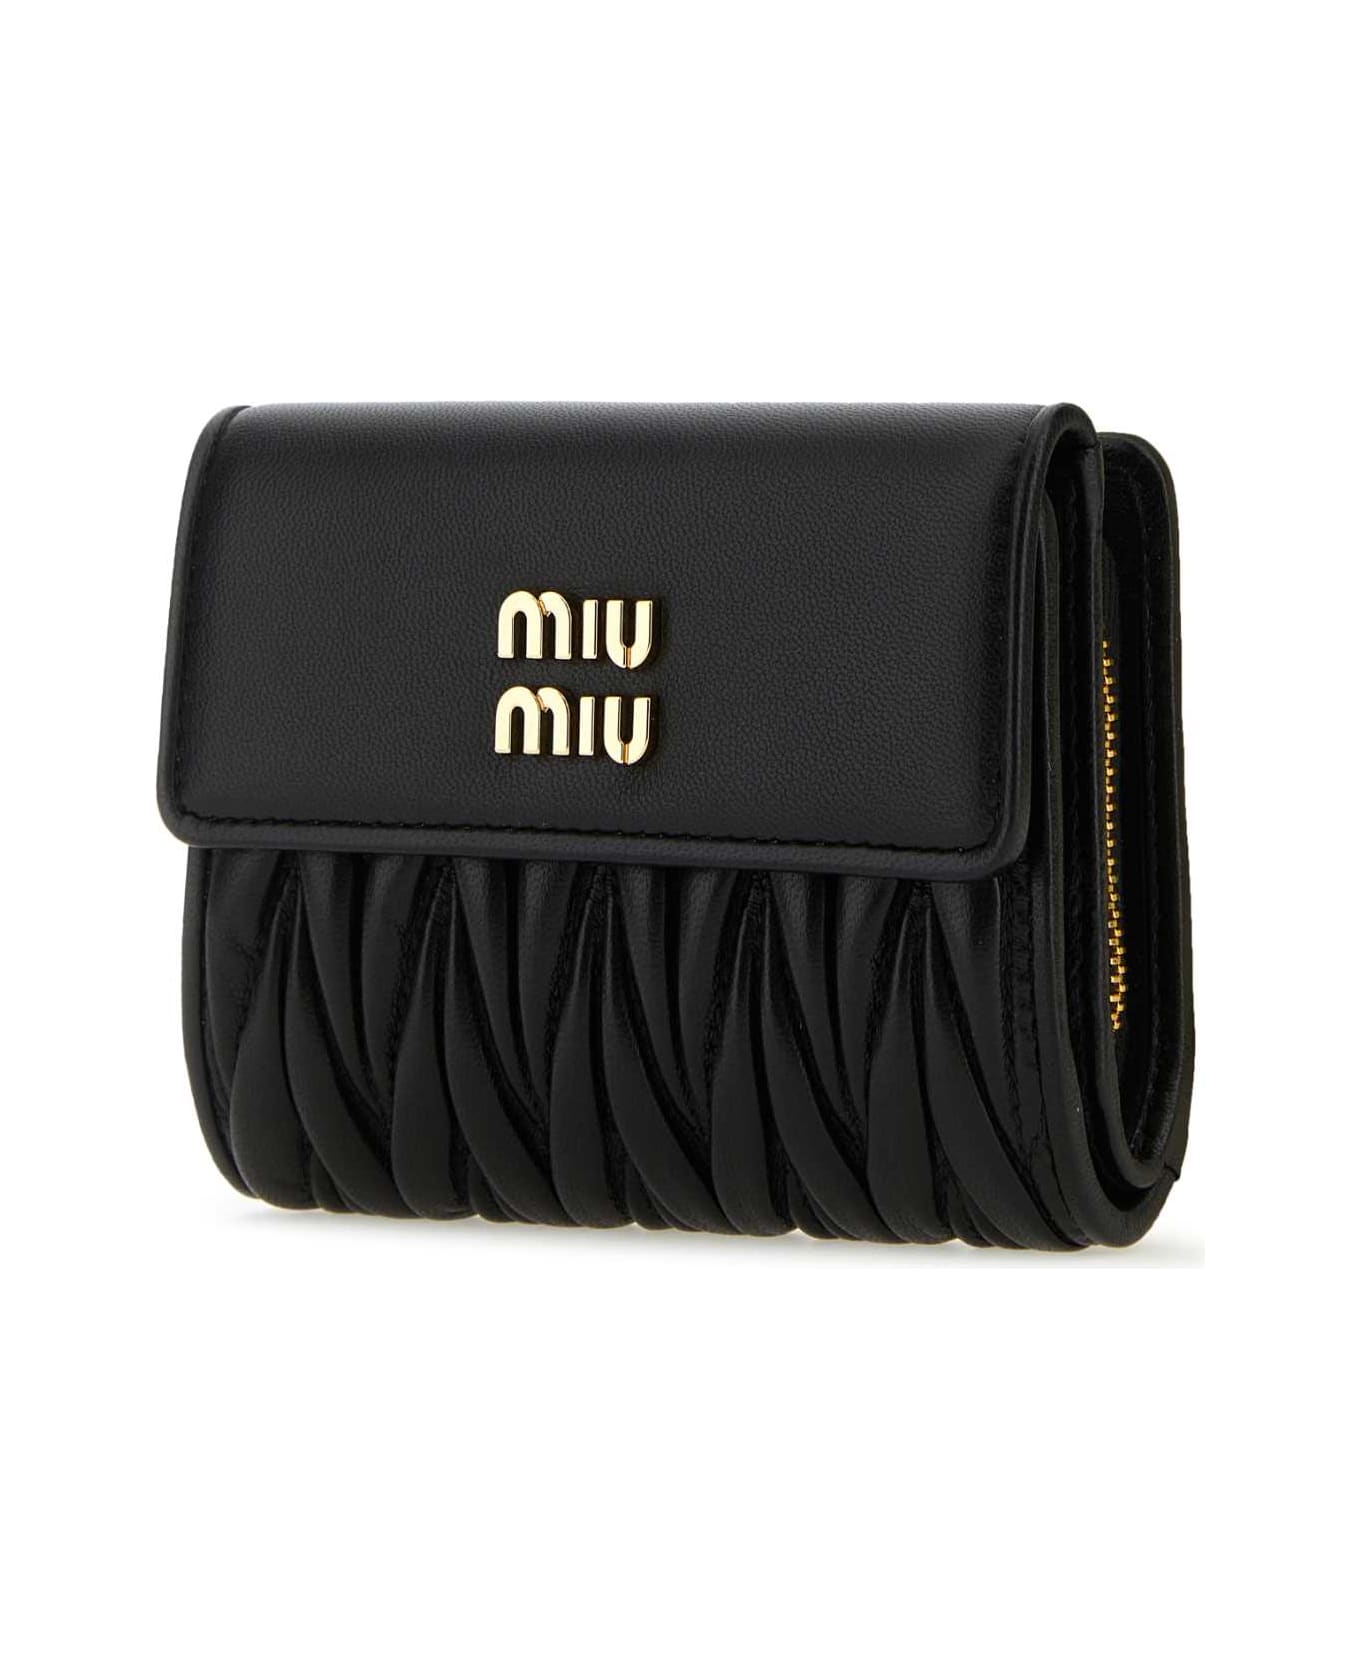 Miu Miu Black Leather Wallet - NERO 財布